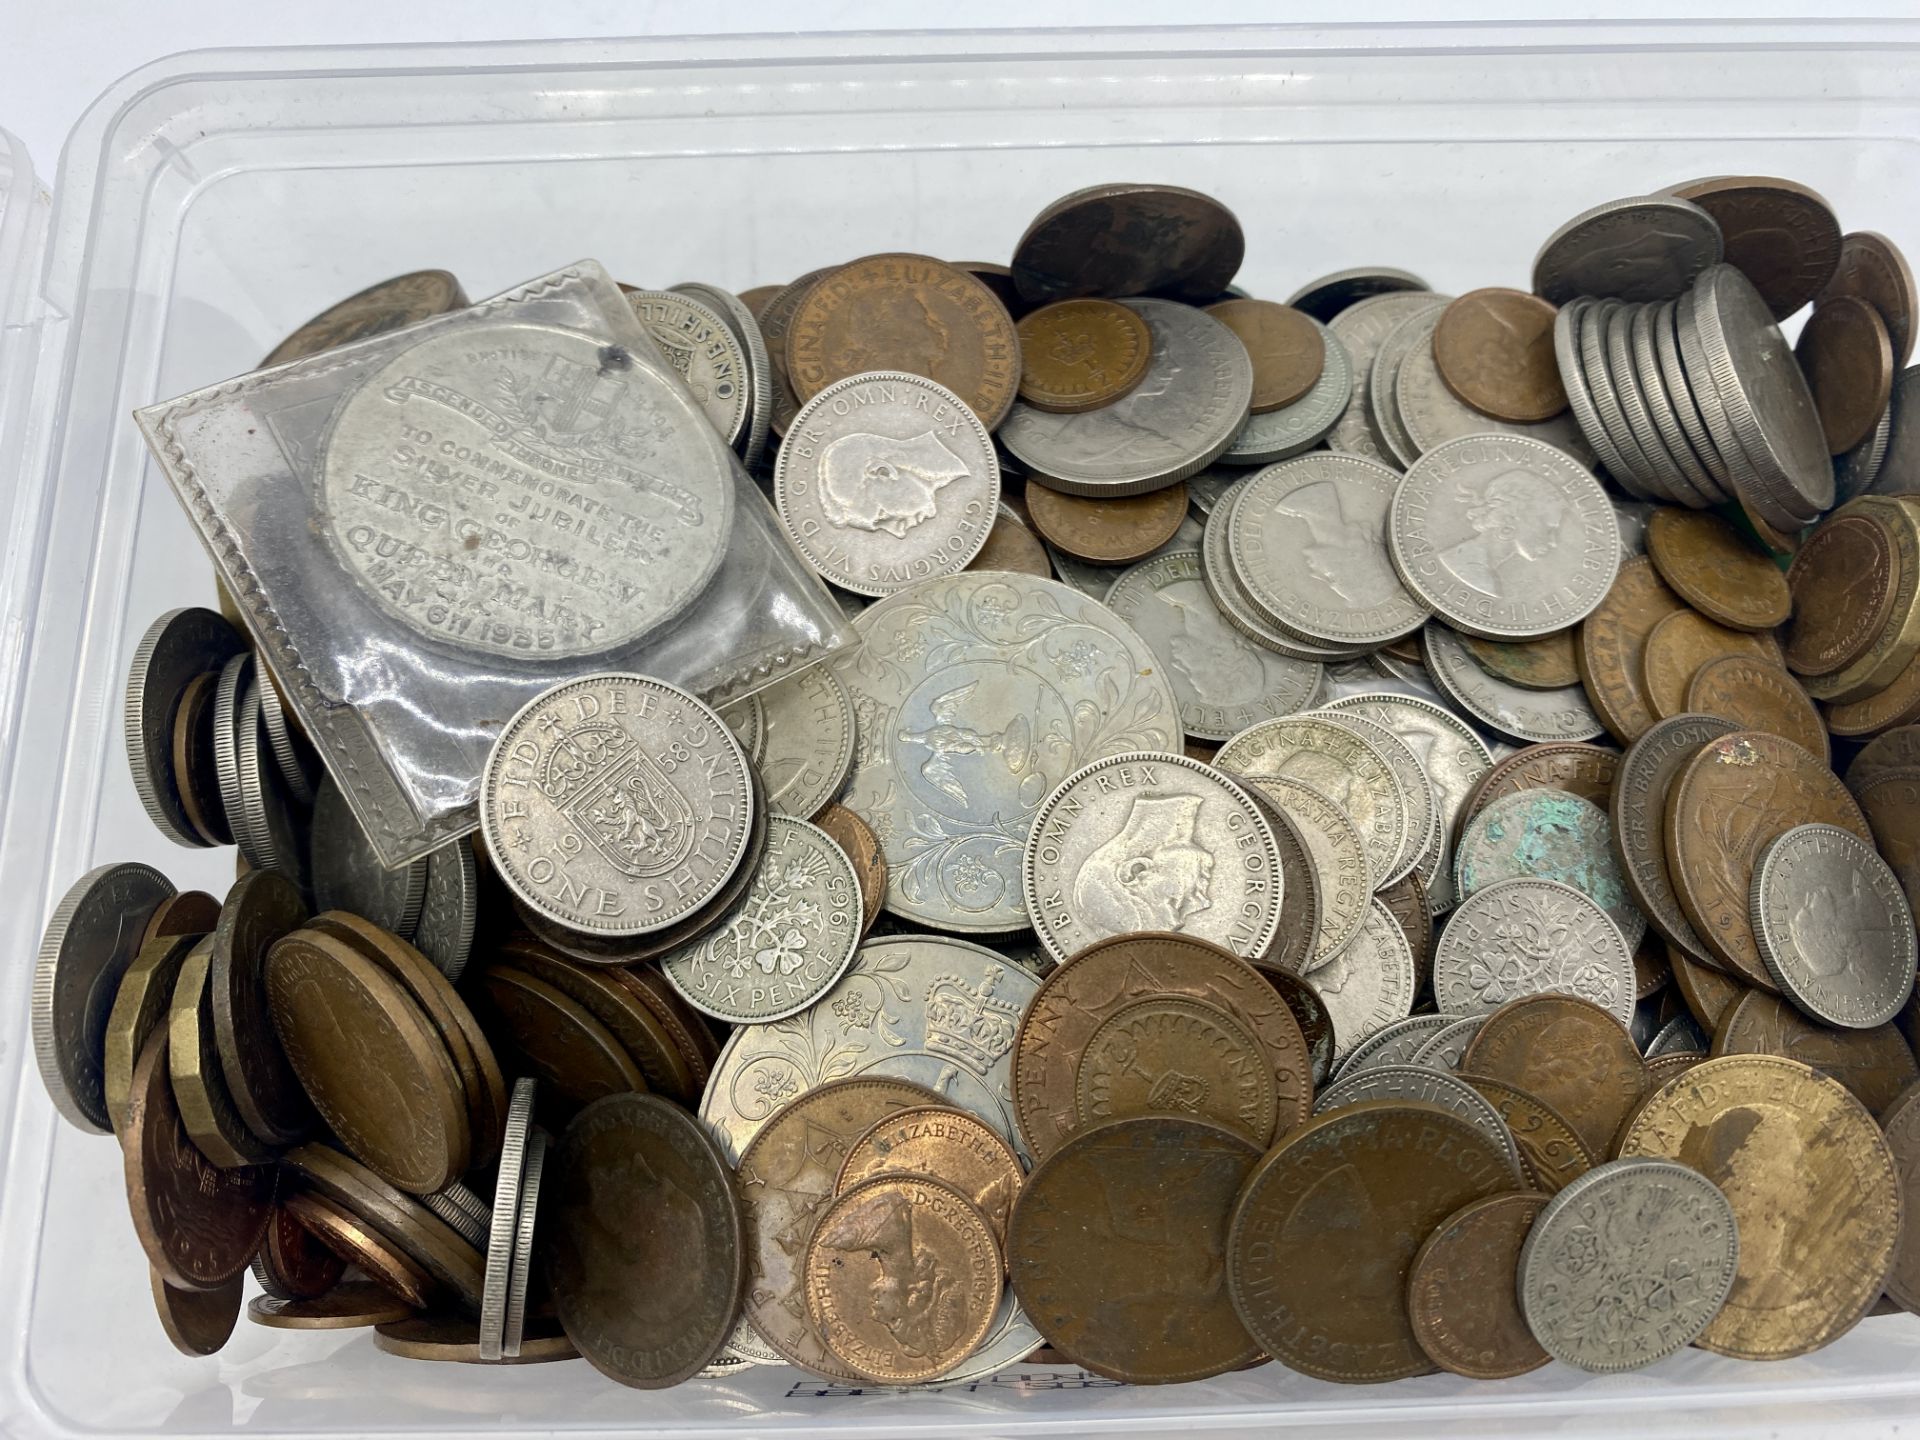 Quantity of British coins